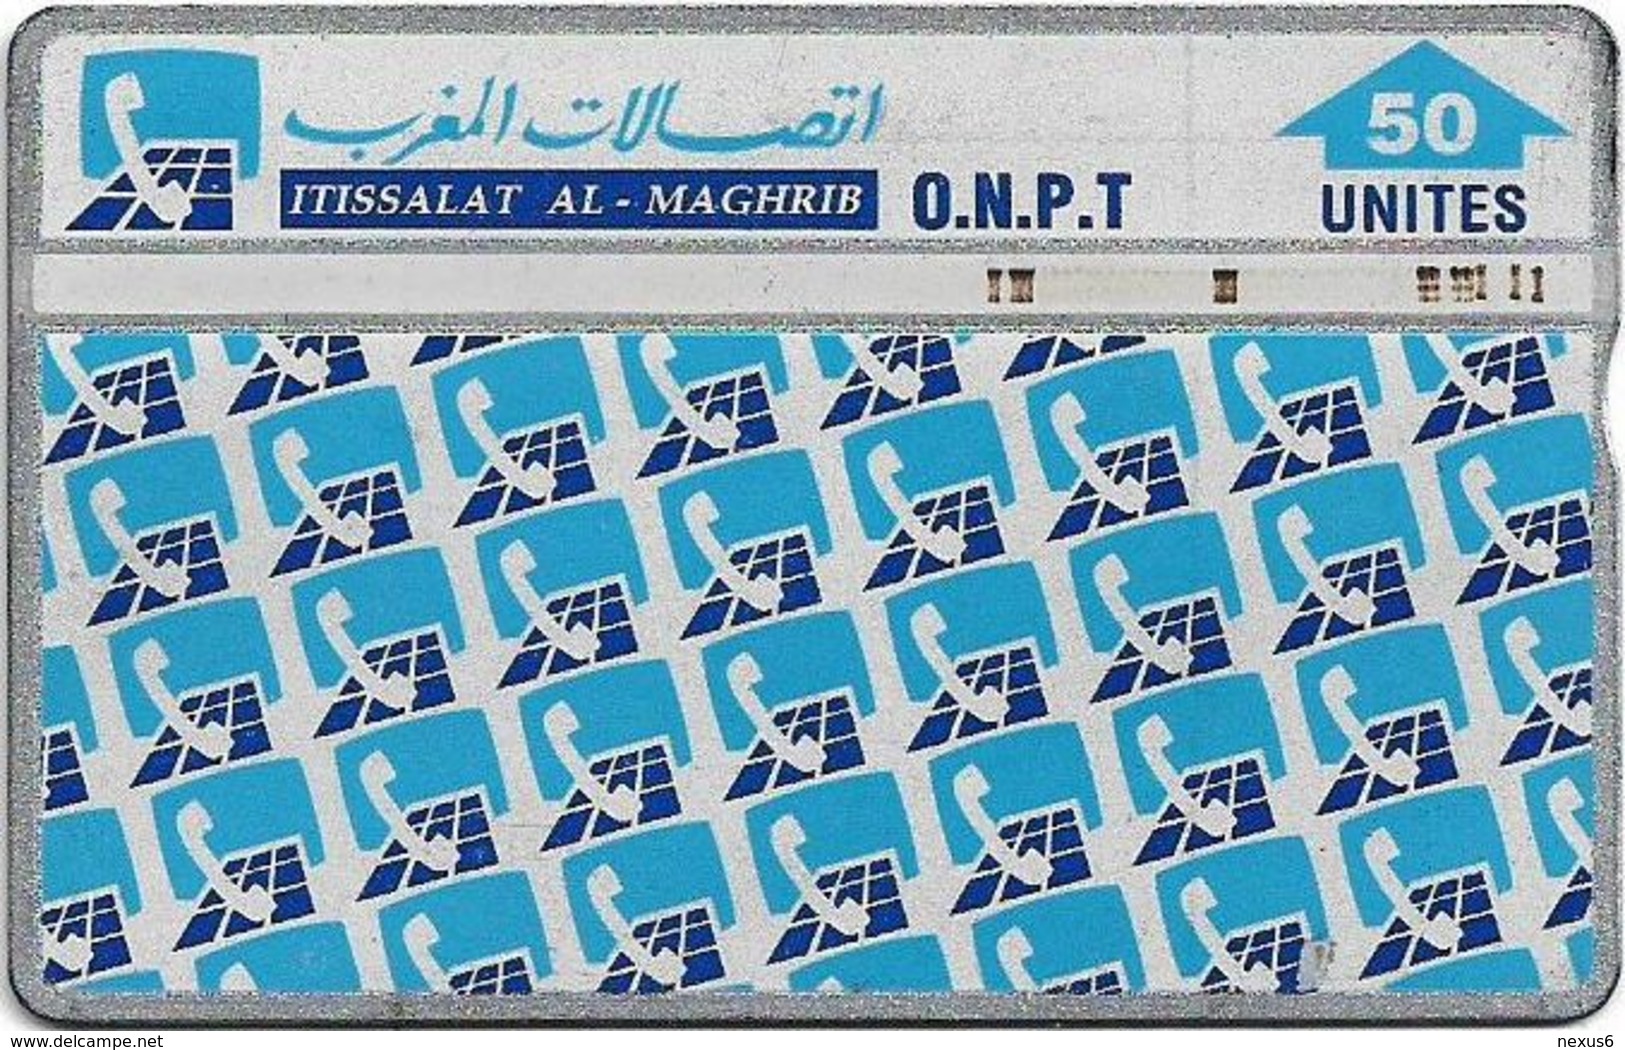 Morocco - ONPT - L&G - Phone Pattern - 702B - 1997, 50U, 100.000ex, Used - Maroc